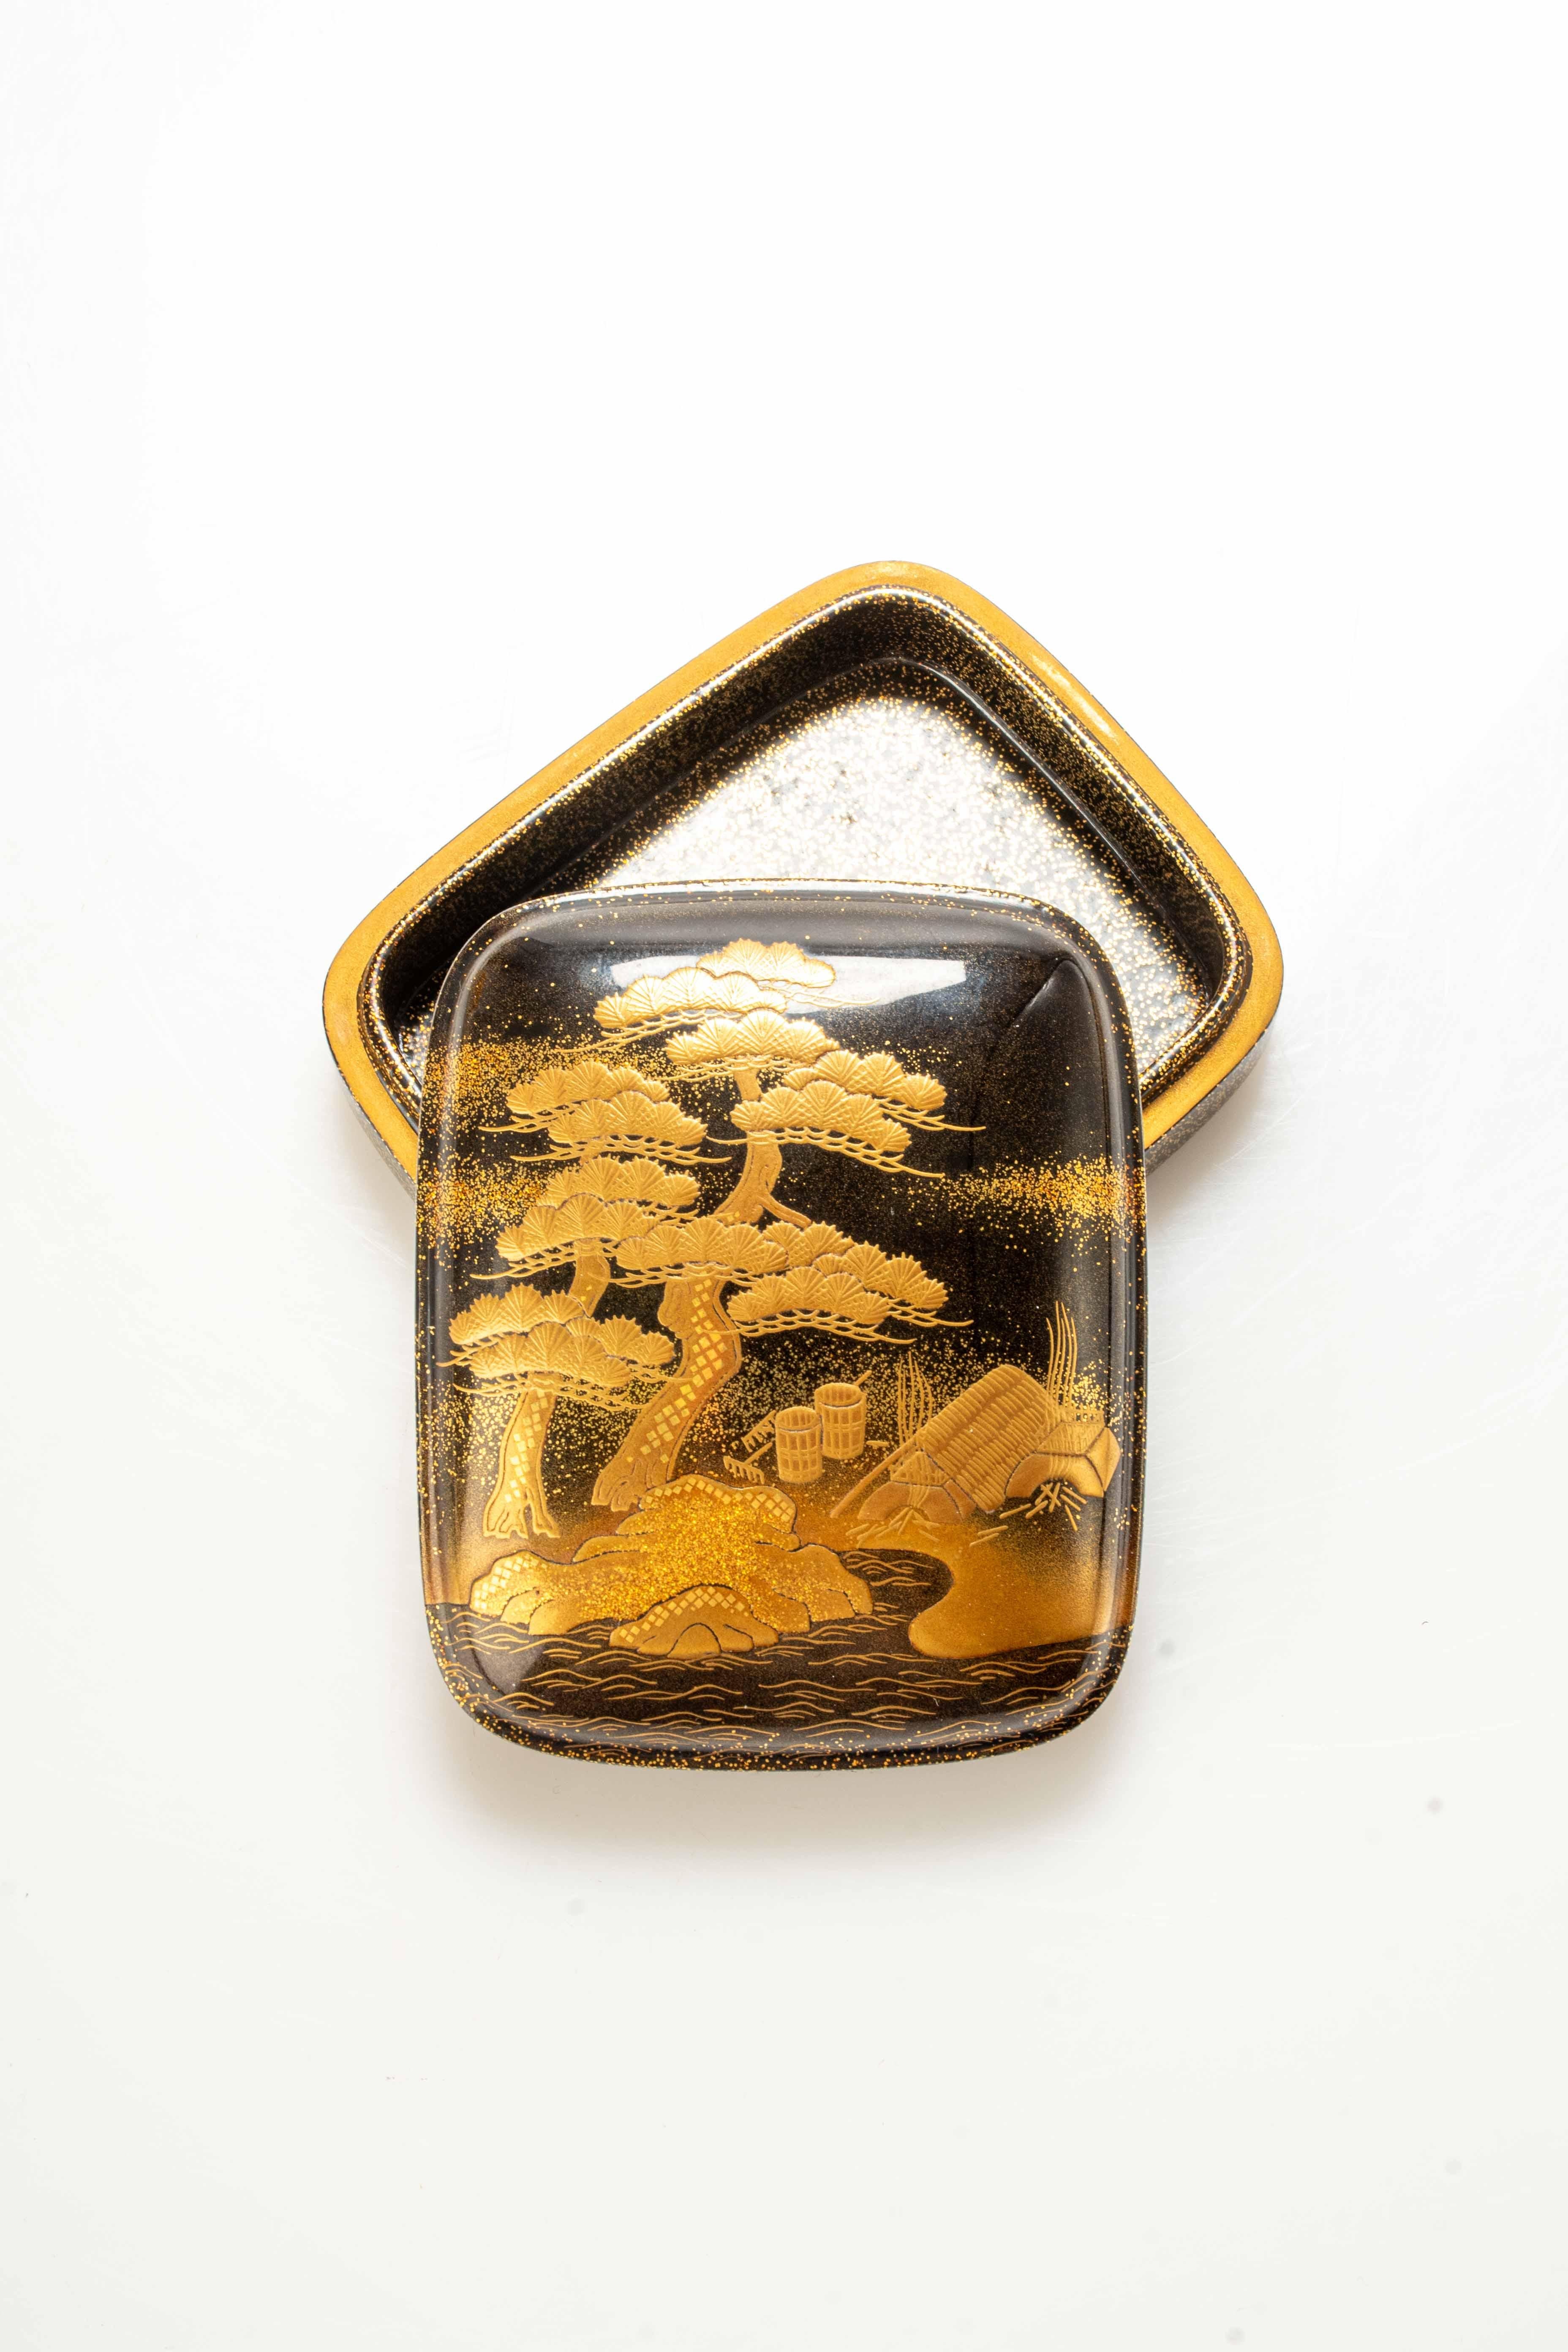 Lacquered Kogo box in maki-è lacquer depicting a naturalistic scene For Sale